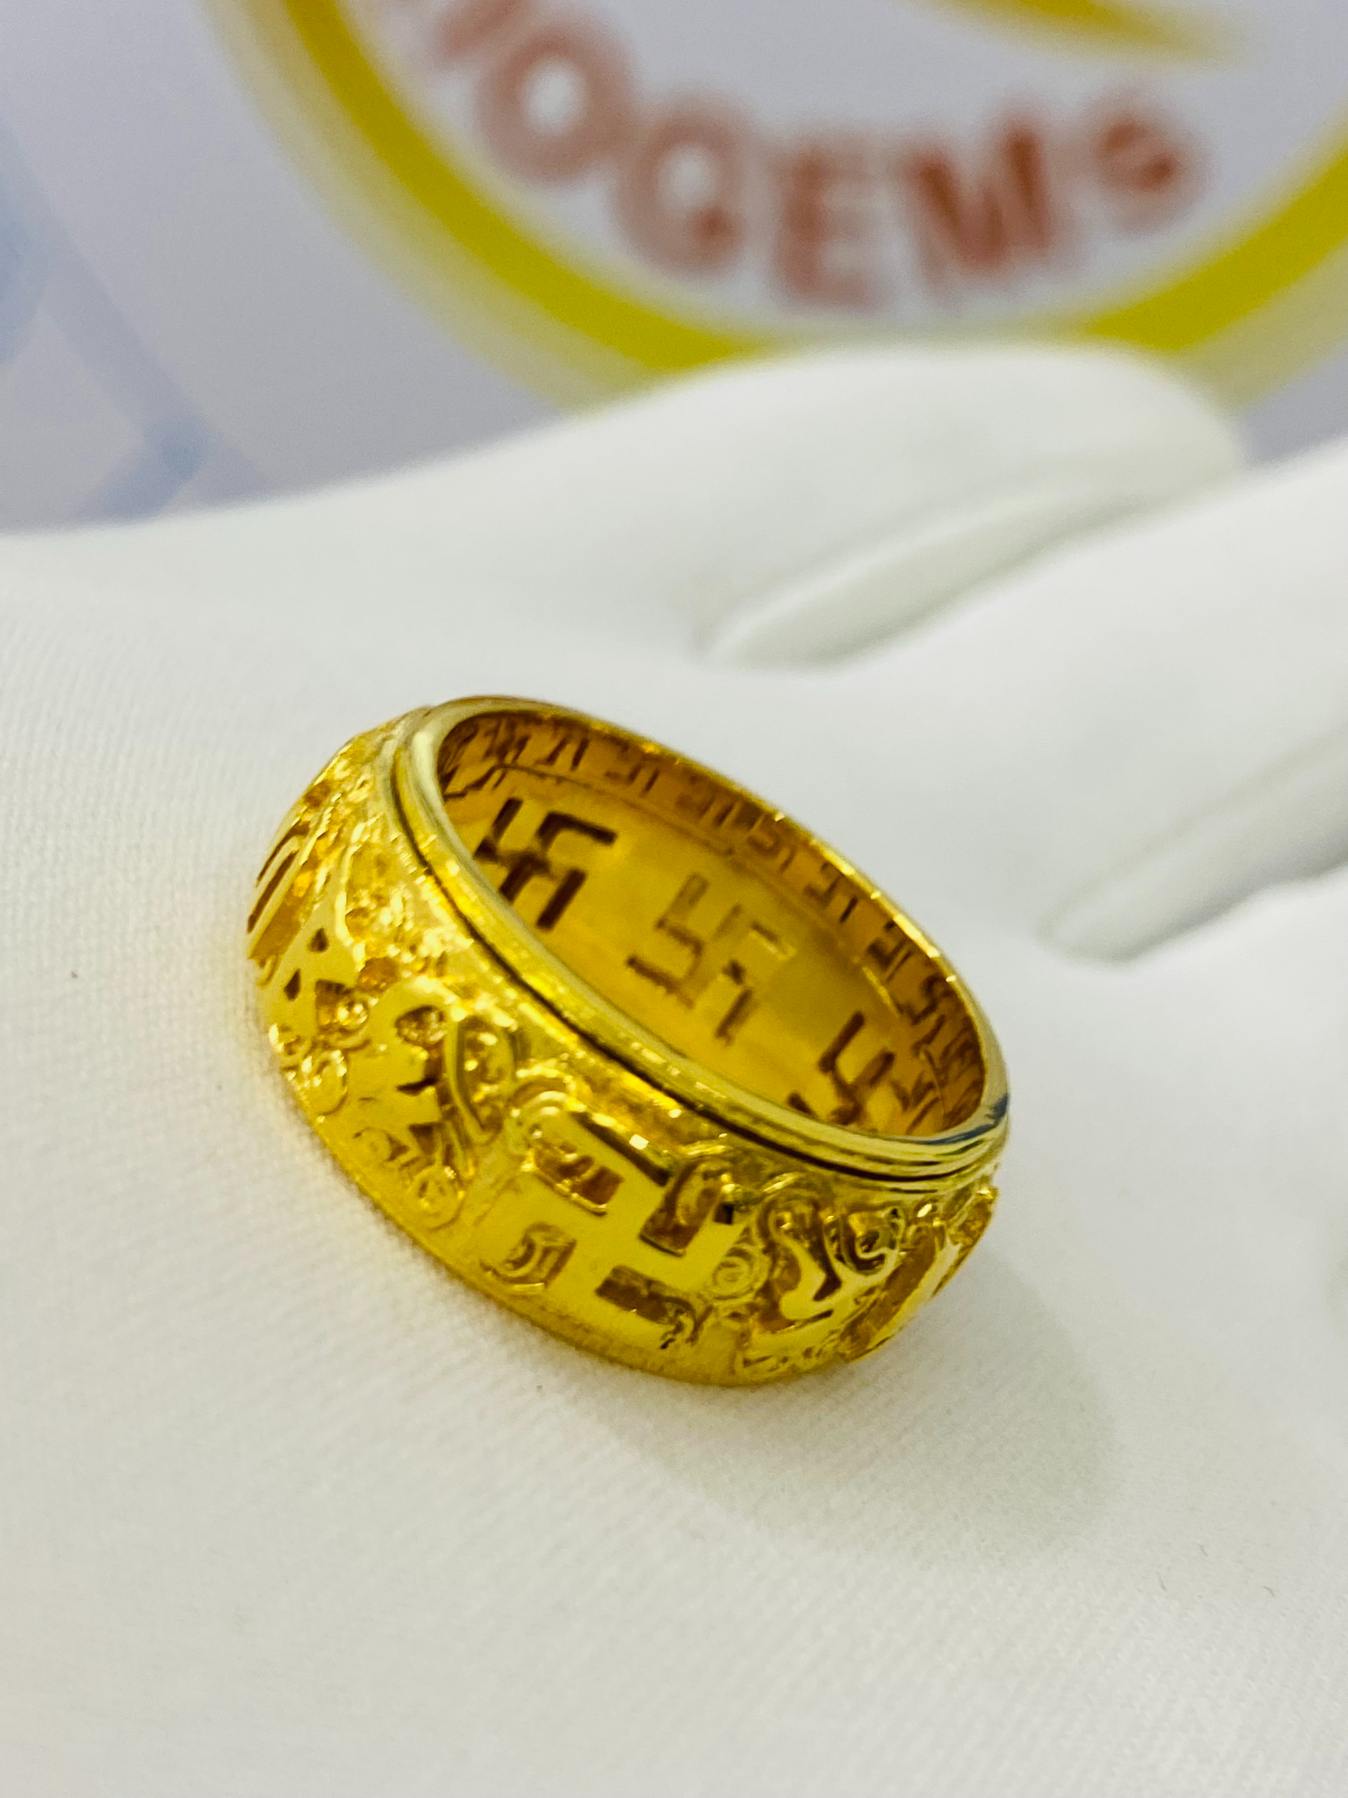 Thiết kế độc đáo của mẫu nhẫn vàng nam xoay | Apj.vn